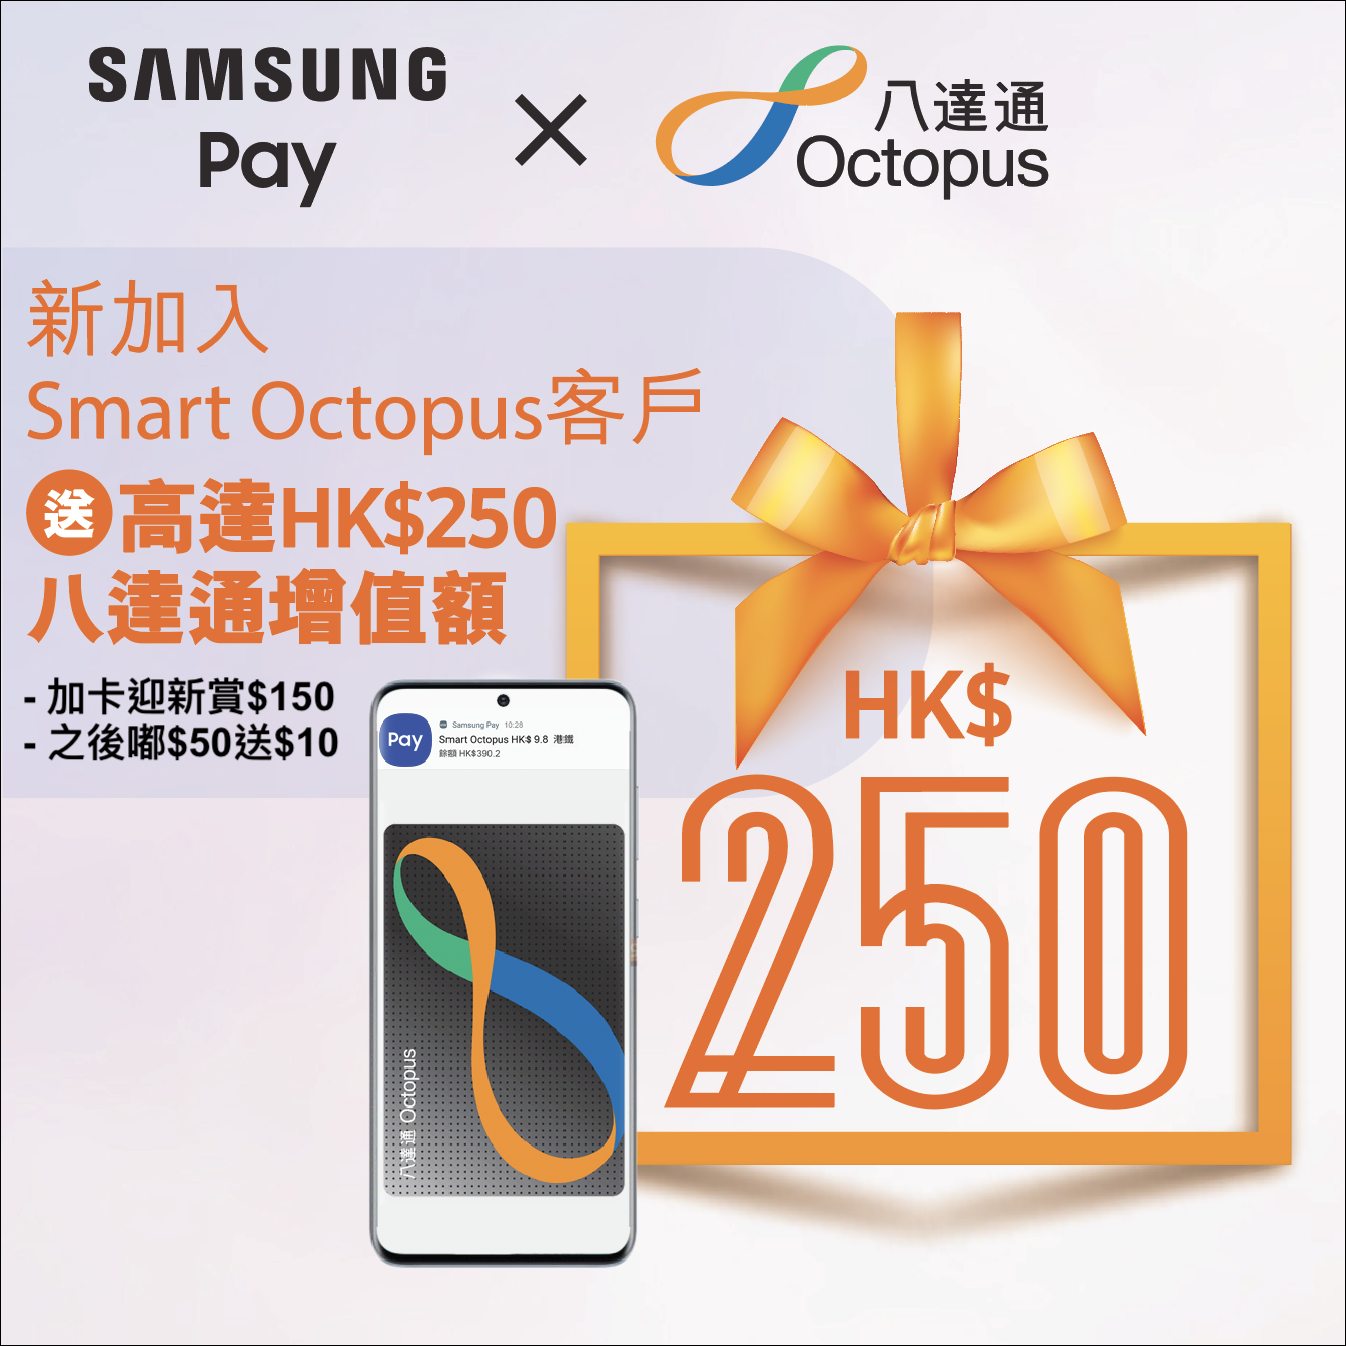 Samsung Pay Smart Octopus 新客戶高達$250八達通增值額獎賞！新加卡可獲$150八達通增值額，而且每消費$50可獲$10回贈！最多10次！